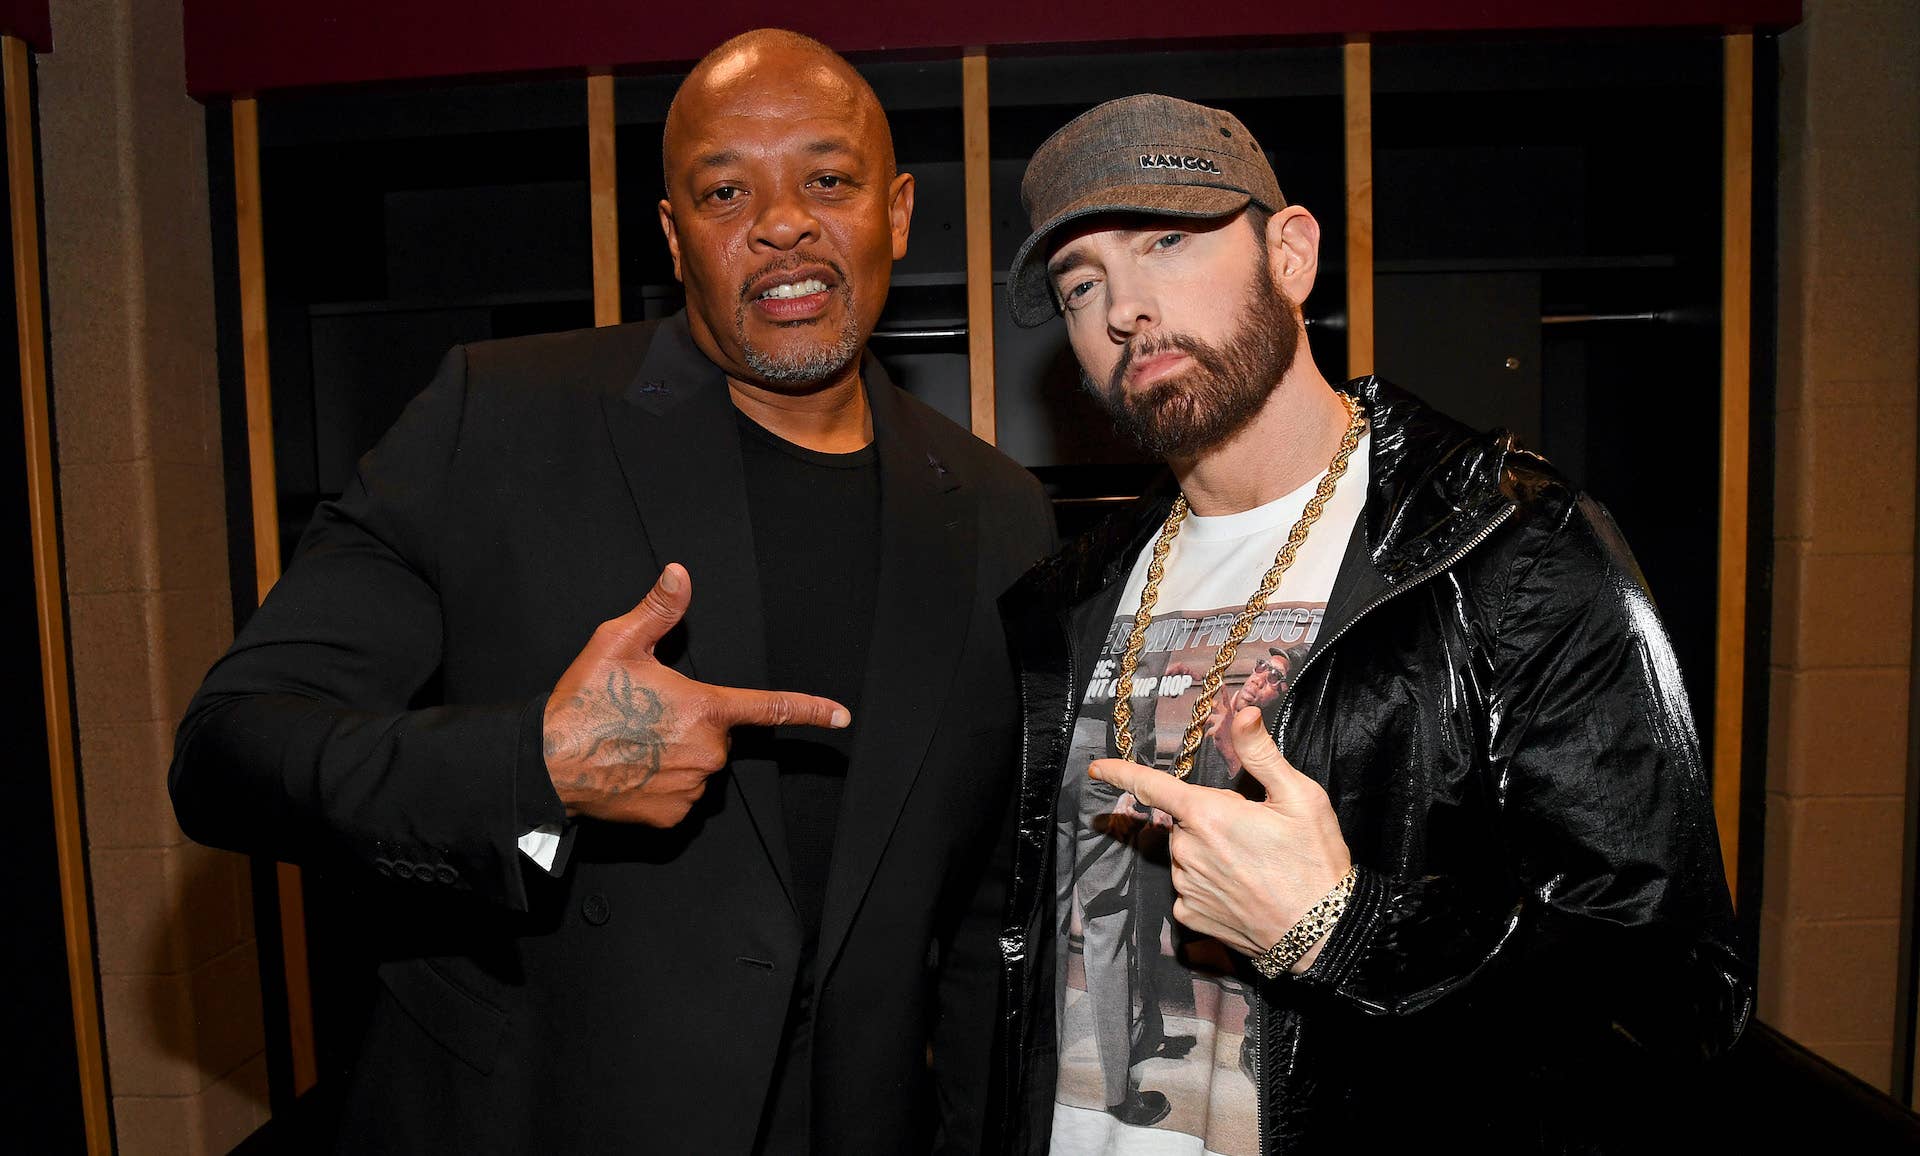 Dr Dre and Eminem standing together